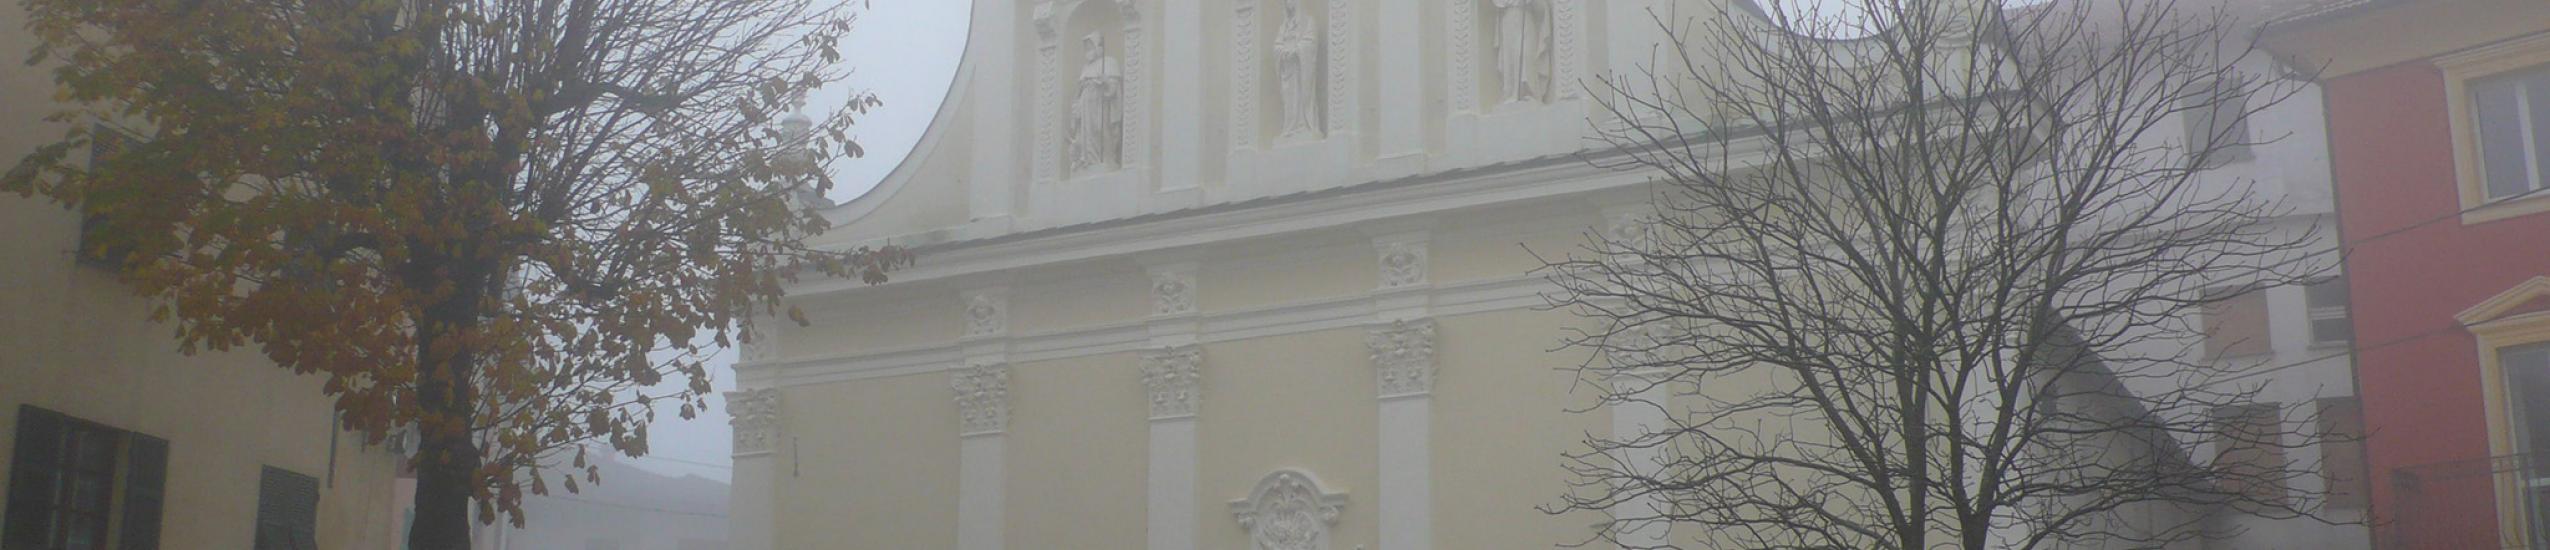 facciata principale della chiesa